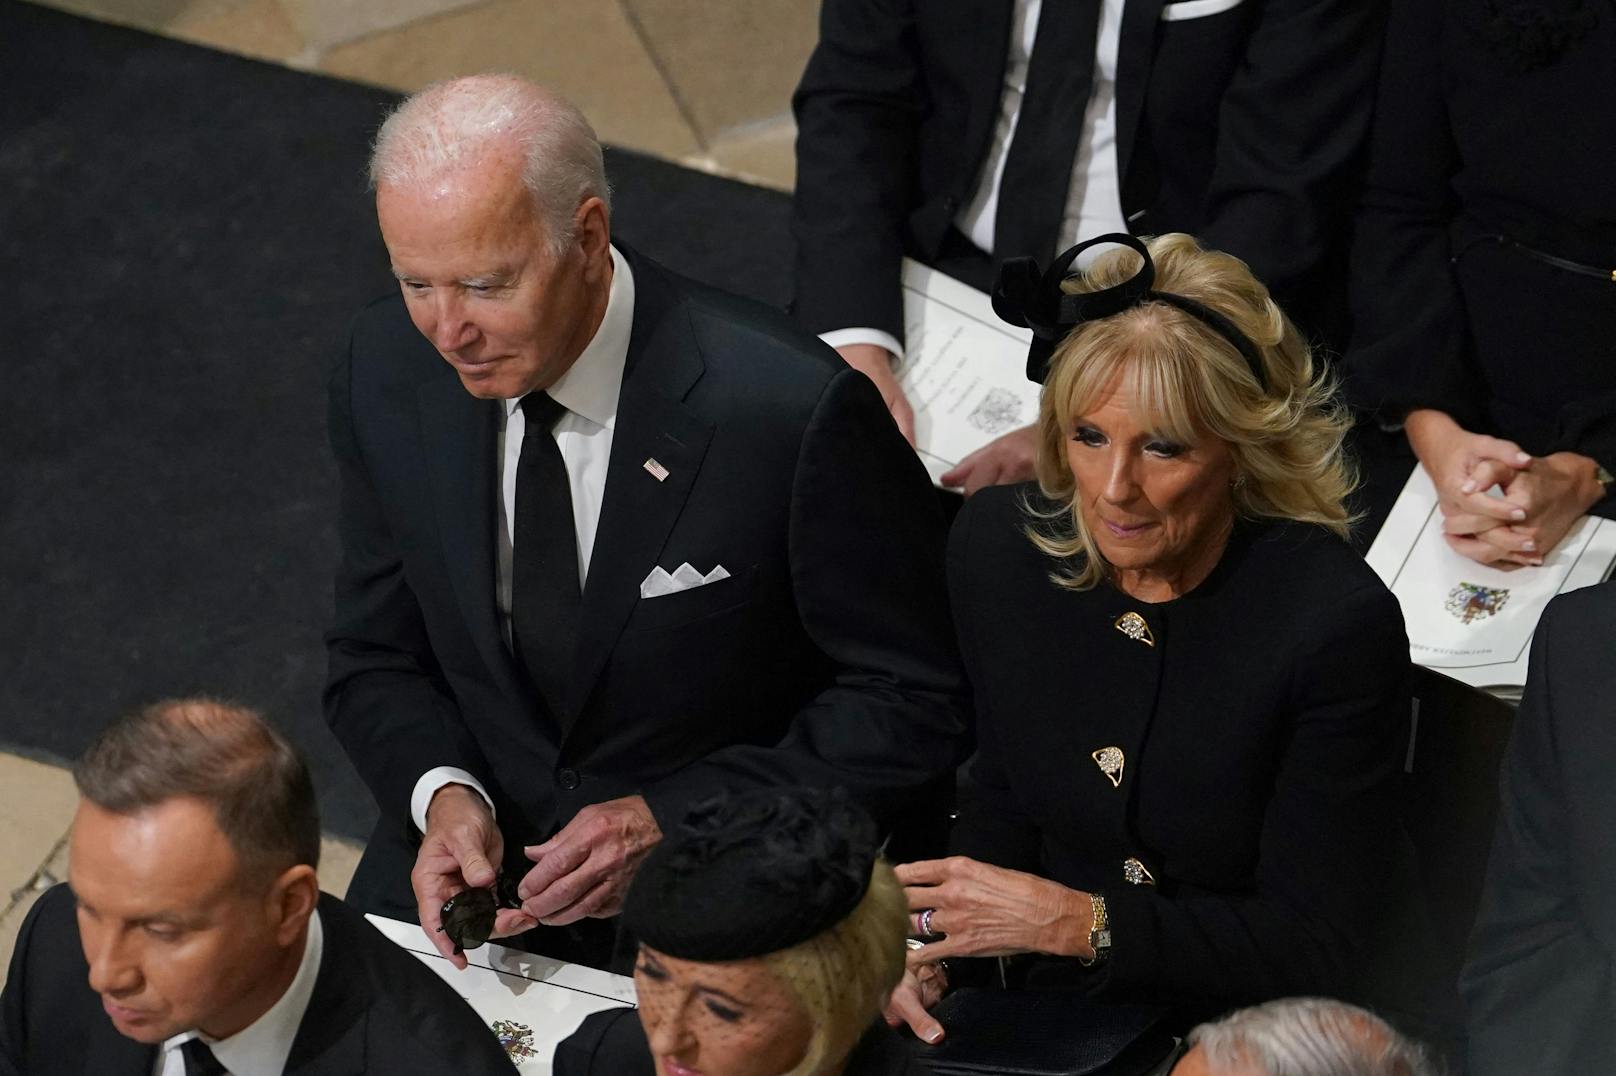 Präsident Joe Biden und First Lady Jill Biden nahmen am 19. September 2022 ihre Plätze in der Westminster Abbey ein. Trump findet das lachhaft.